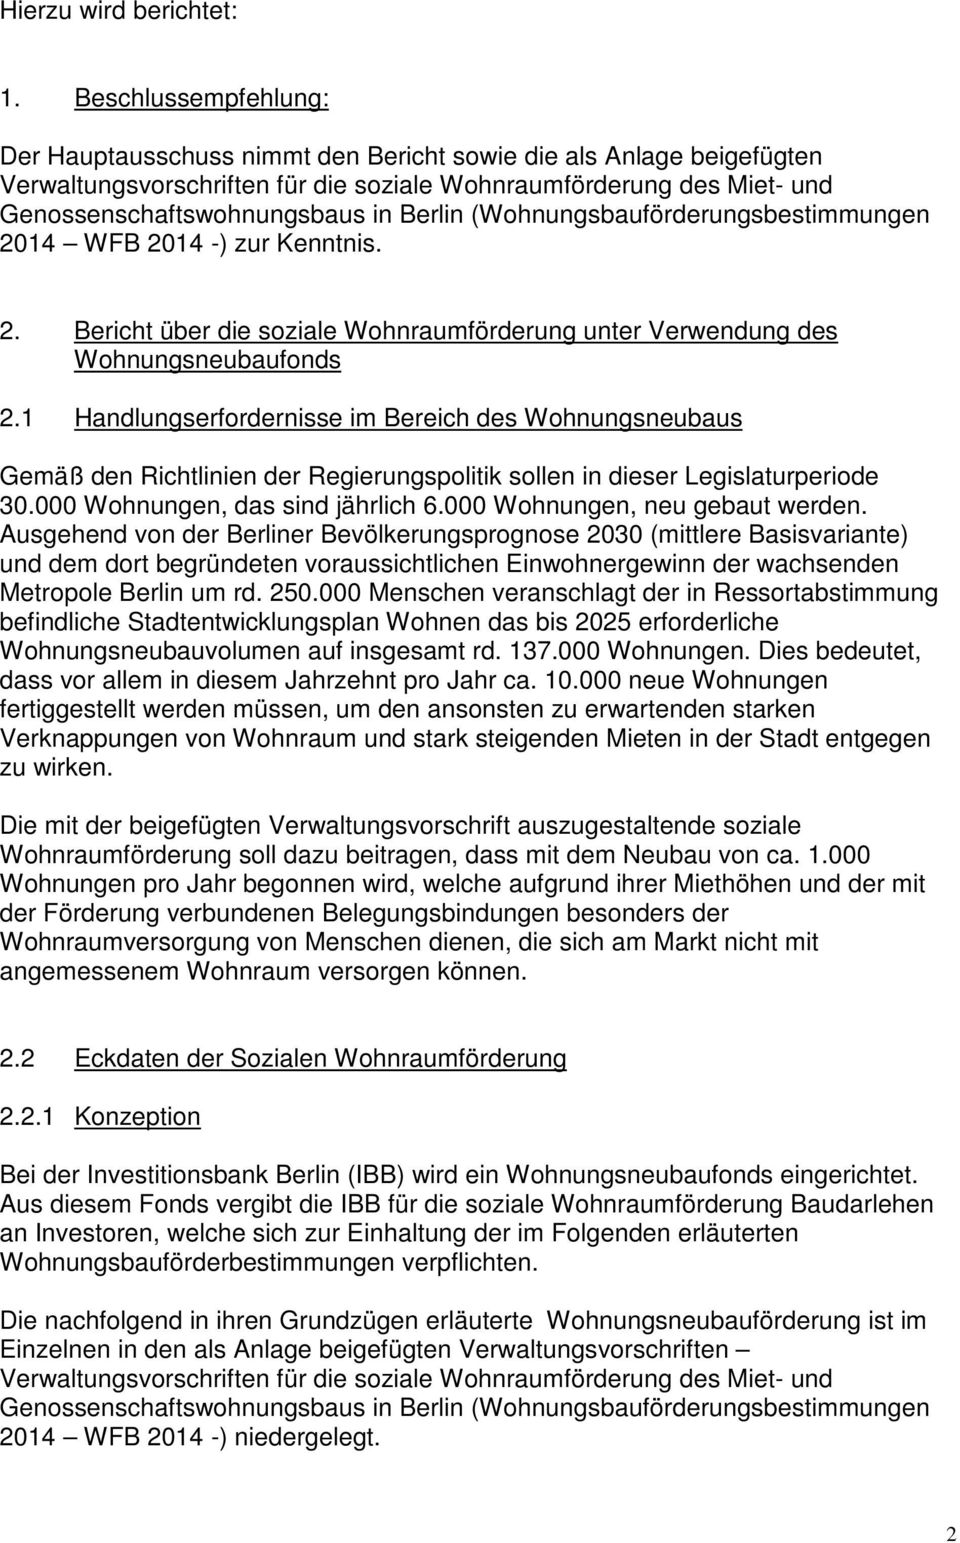 Berlin (Wohnungsbauförderungsbestimmungen 2014 WFB 2014 -) zur Kenntnis. 2. Bericht über die soziale Wohnraumförderung unter Verwendung des Wohnungsneubaufonds 2.